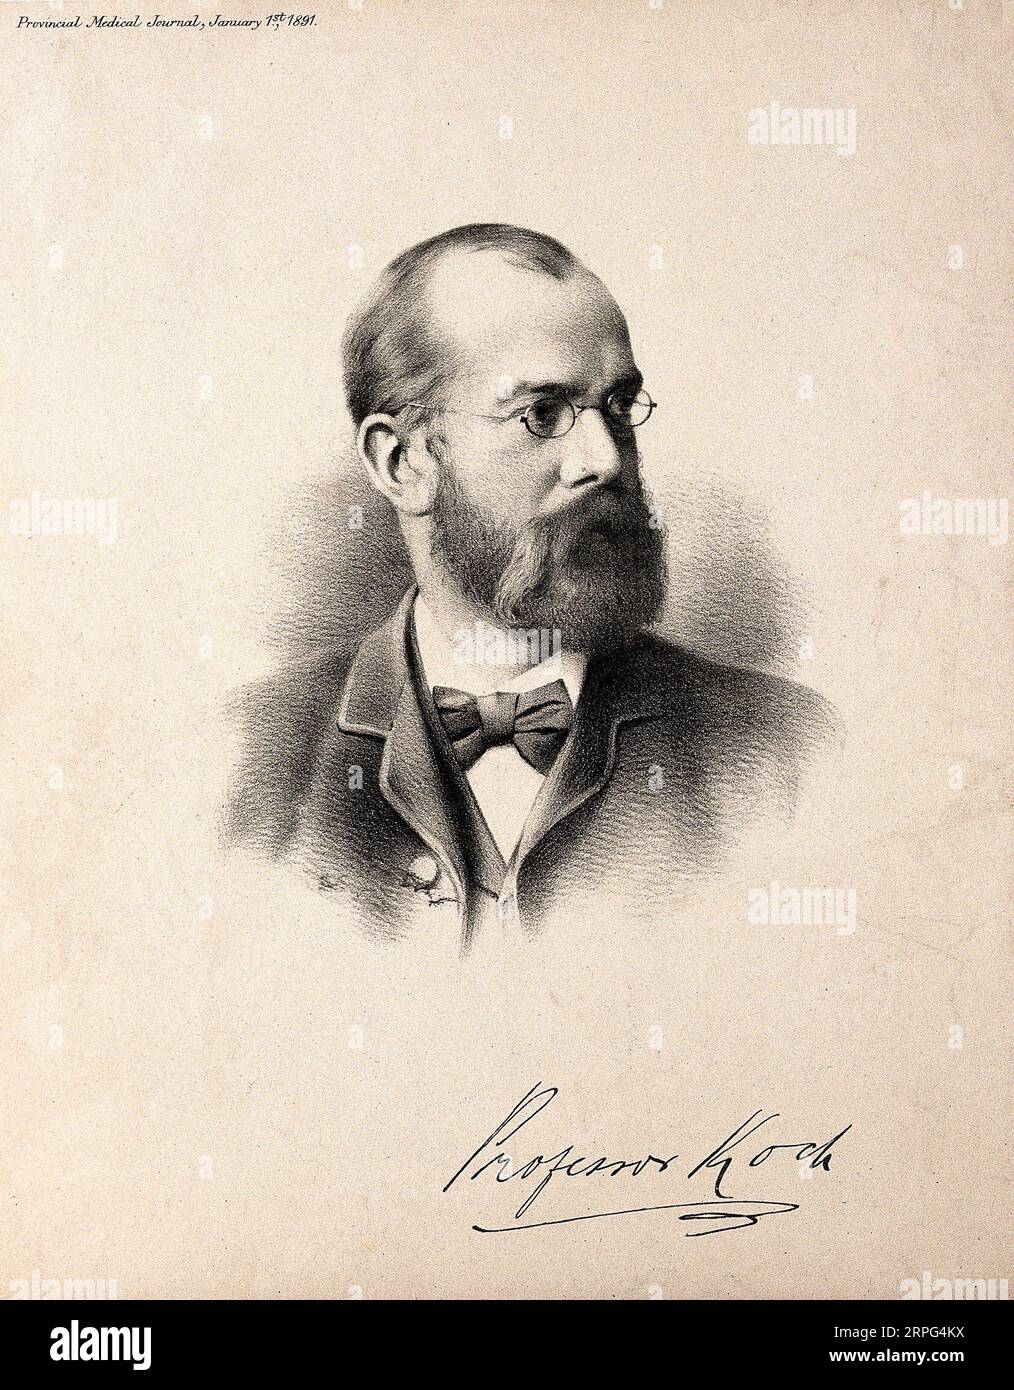 Robert Koch portrait, 1843 – 1910, était un médecin et microbiologiste allemand, lithographie à partir de 1891 Banque D'Images